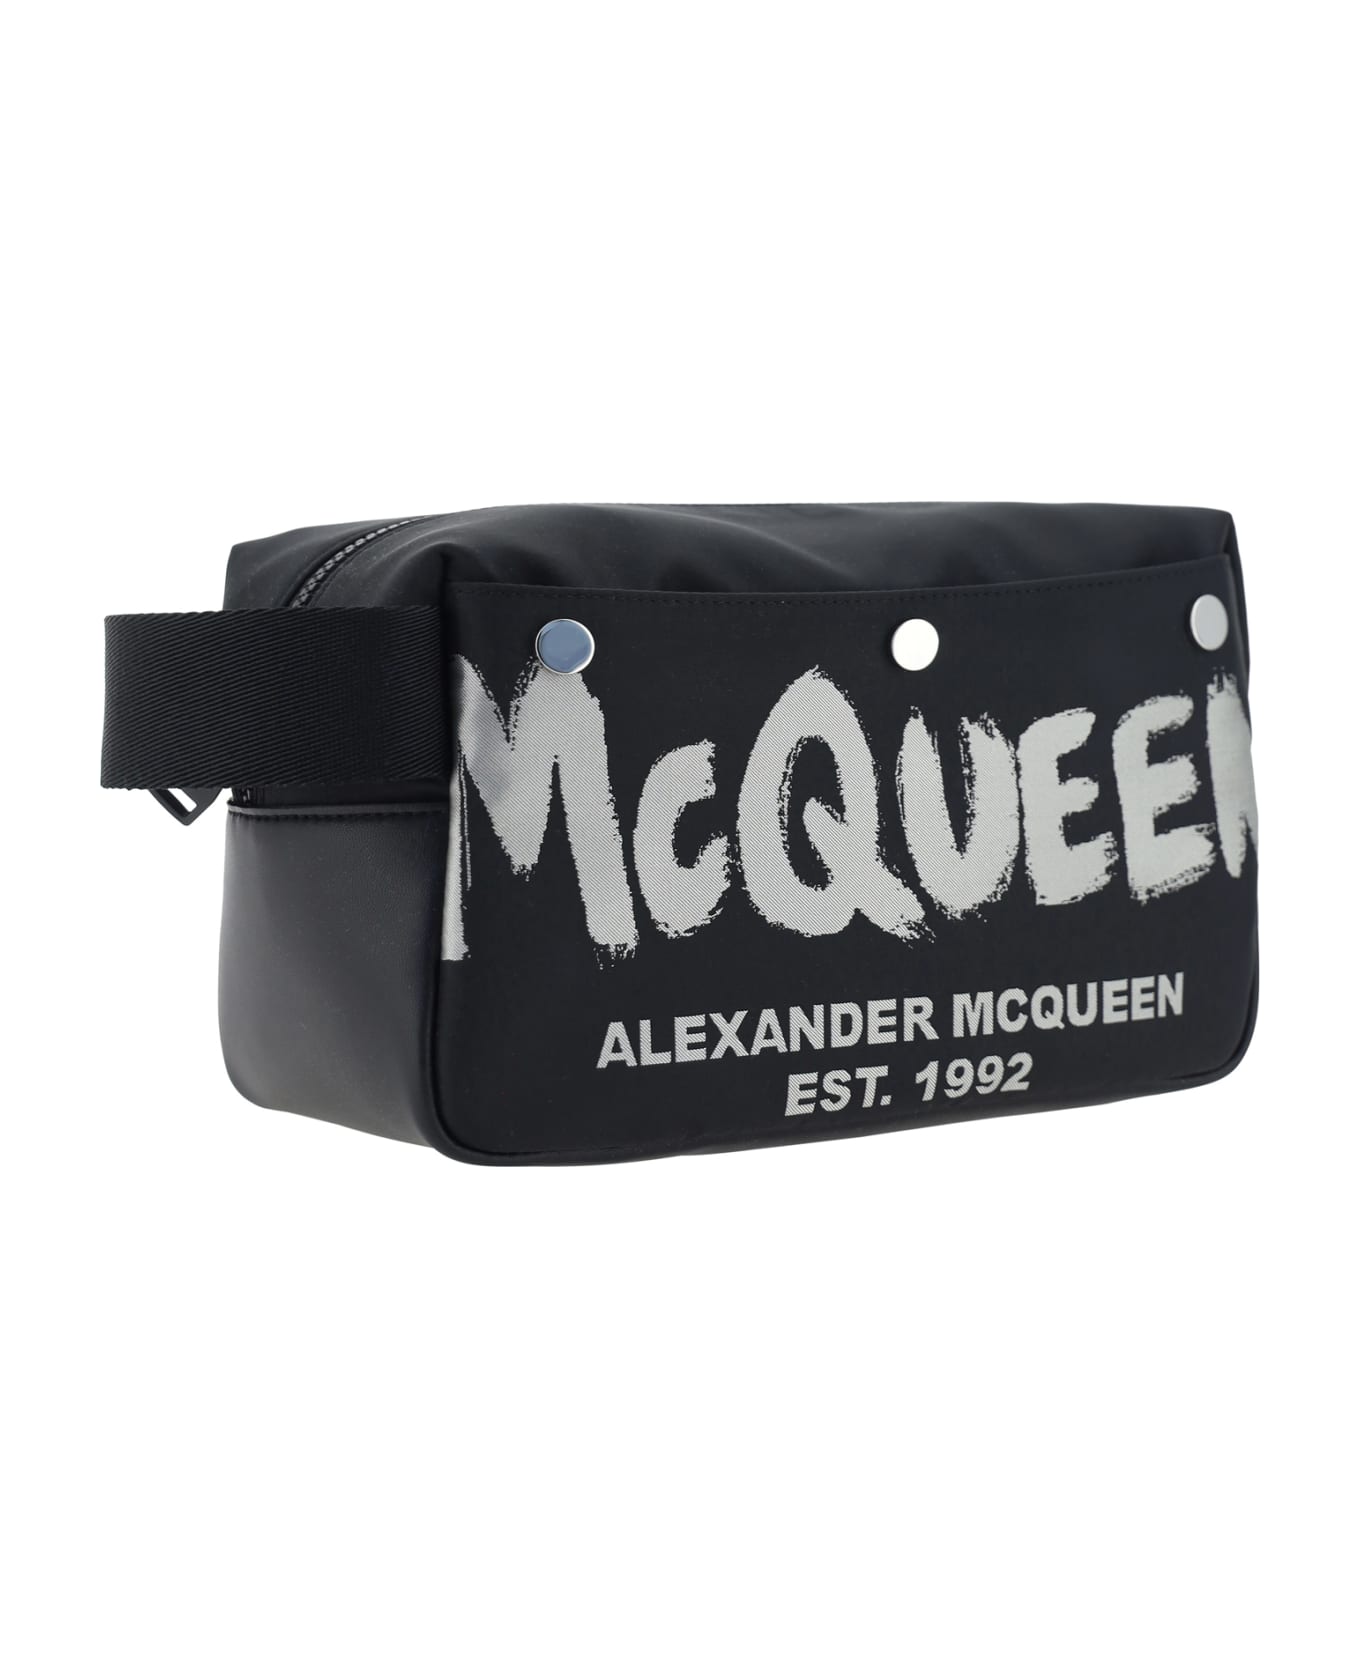 Alexander McQueen Beauty Case - Black/off White ベルトバッグ